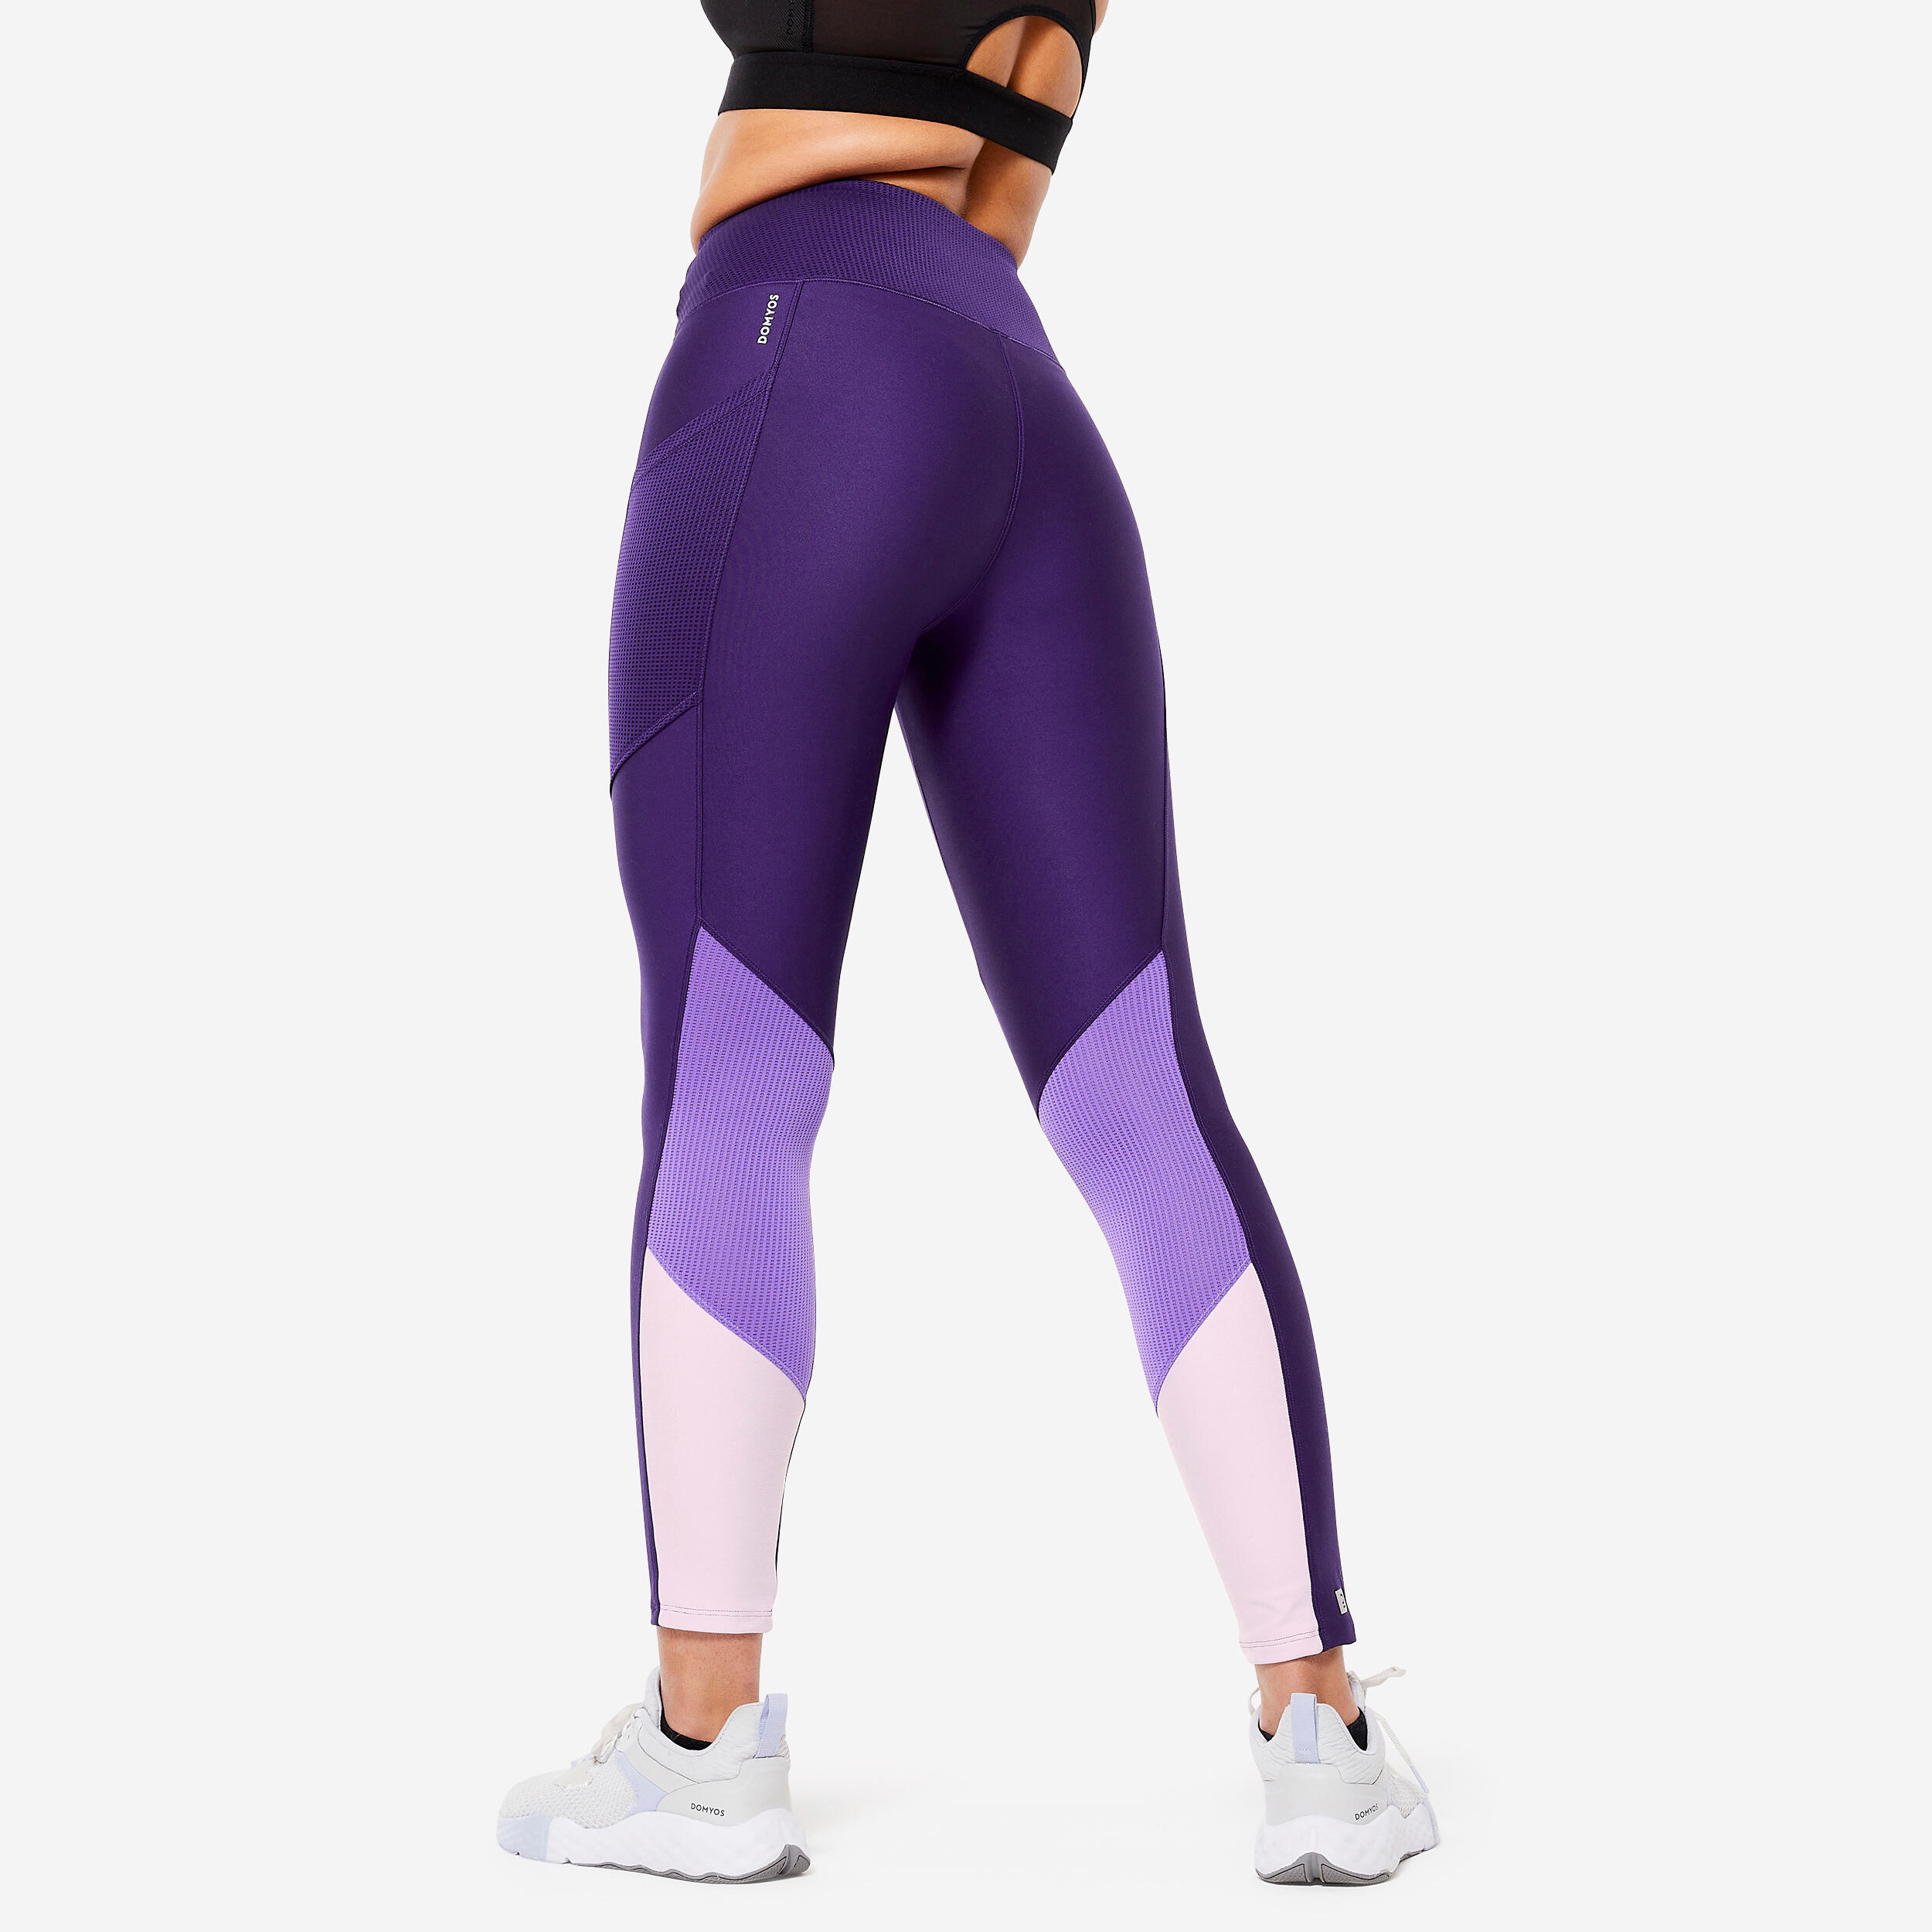 LA7 Embellished Pocket Legging for Women for Gyming, Cycling, Yoga,  Workout, Large/X-Large, Denim Blue